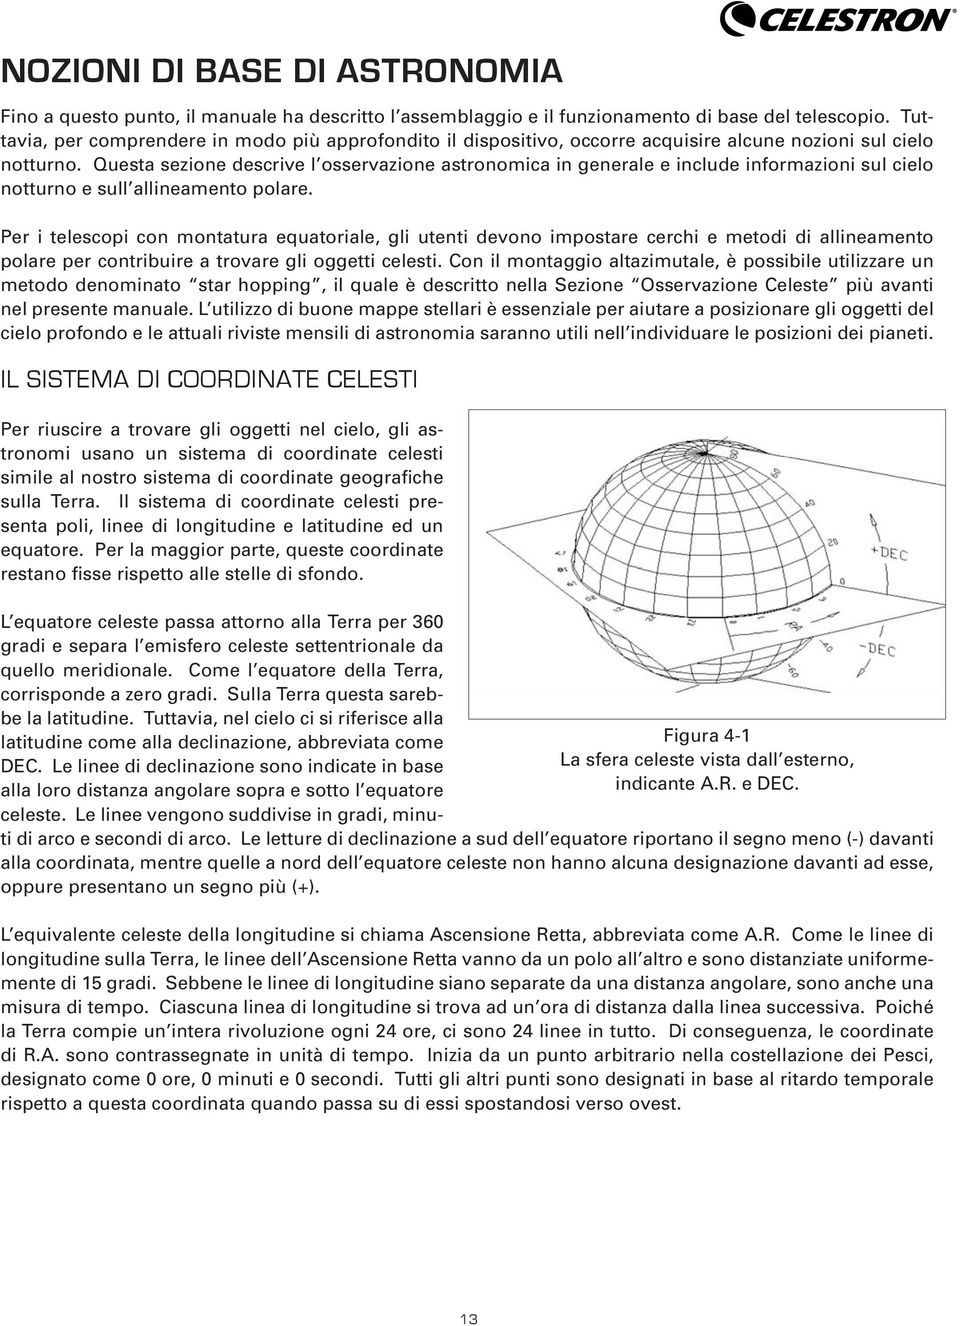 Questa sezione descrive l osservazione astronomica in generale e include informazioni sul cielo notturno e sull allineamento polare.